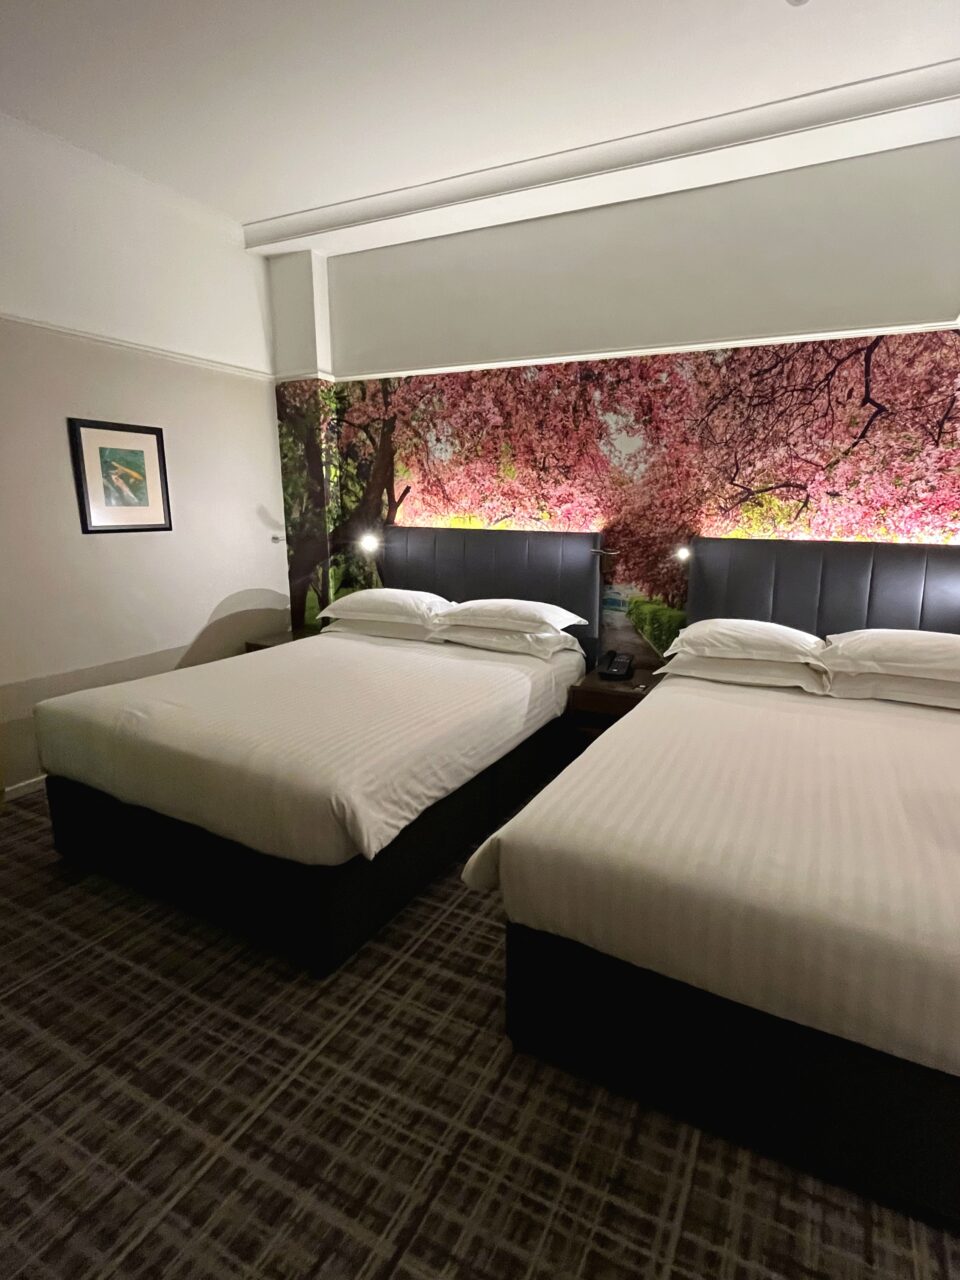 Hotellrom med freshe farger og to doble senger. Foto